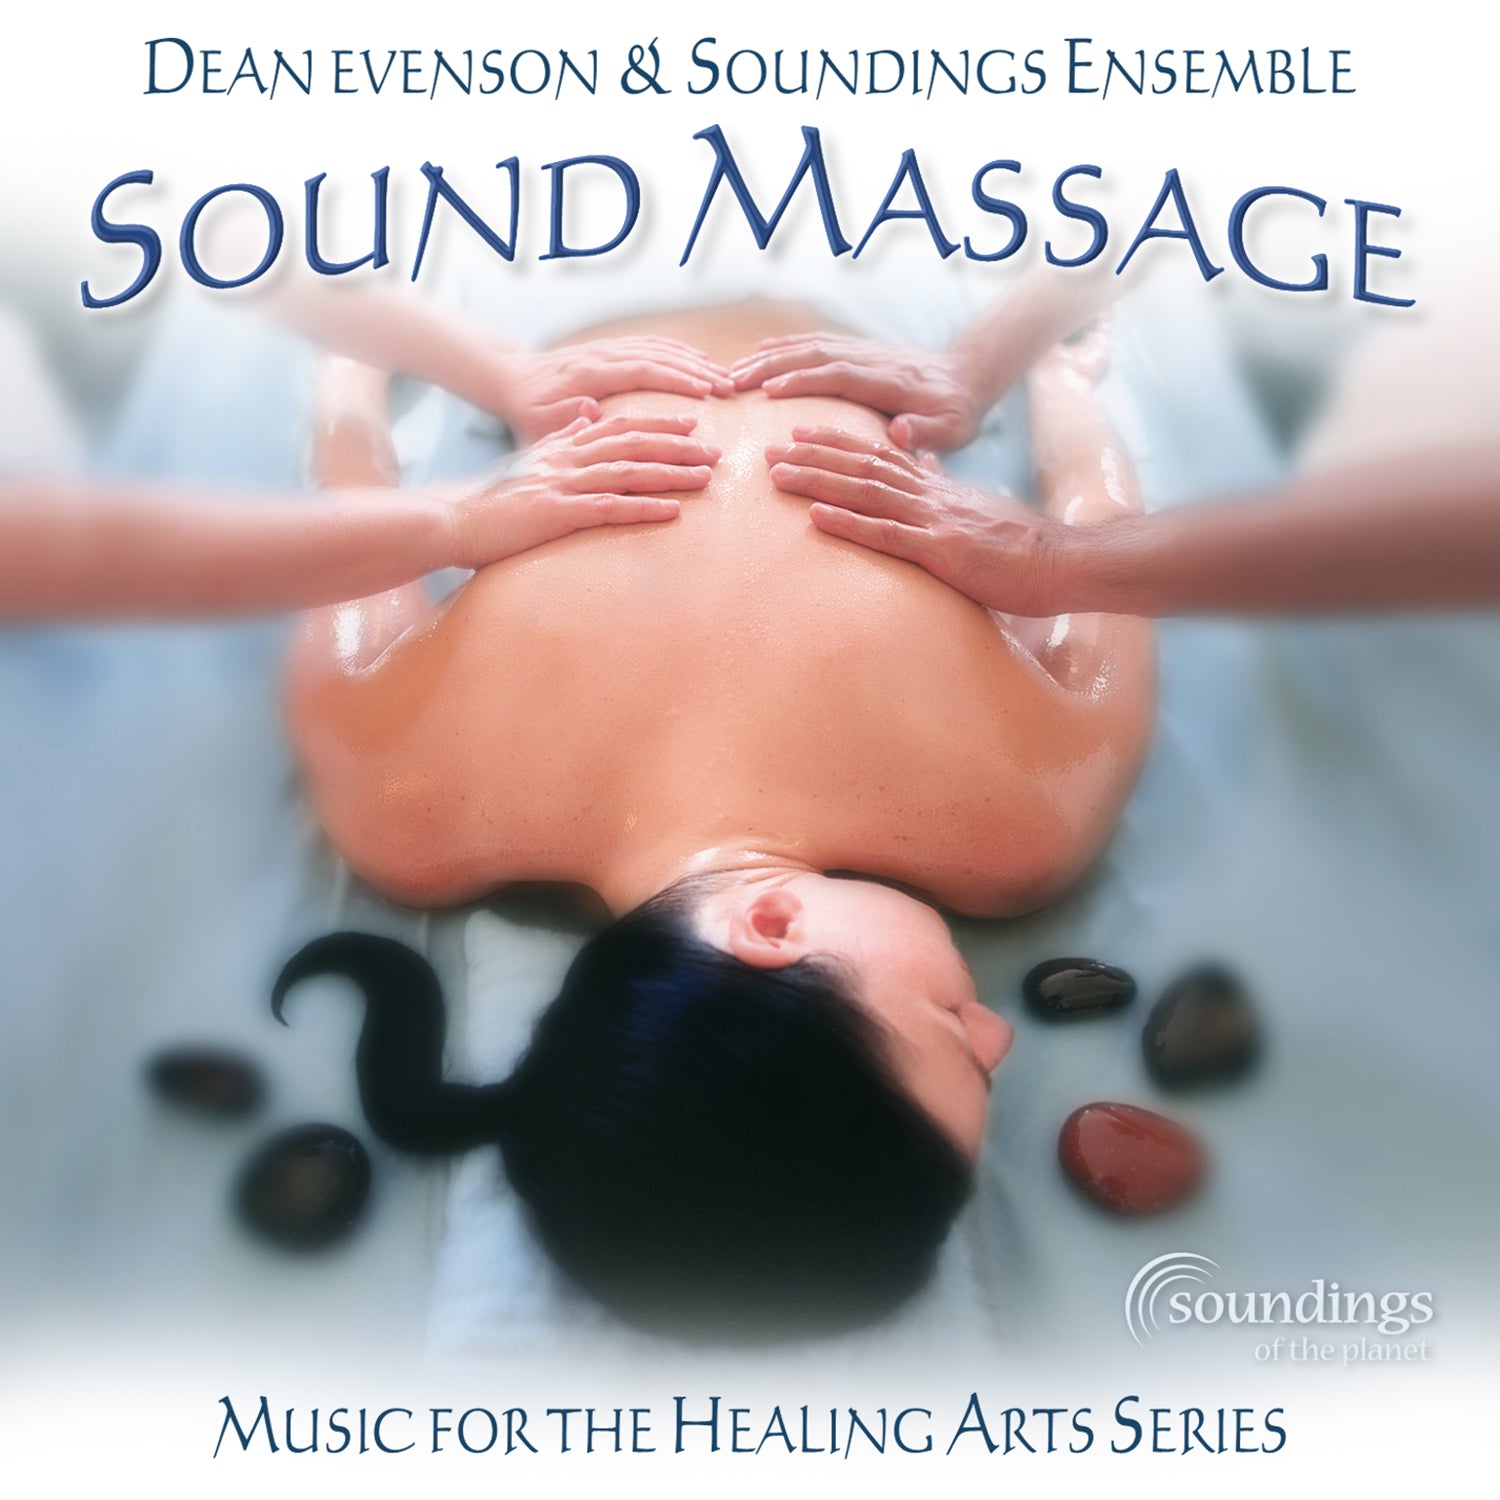 Dean Evenson and Soundings Ensemble sound massage